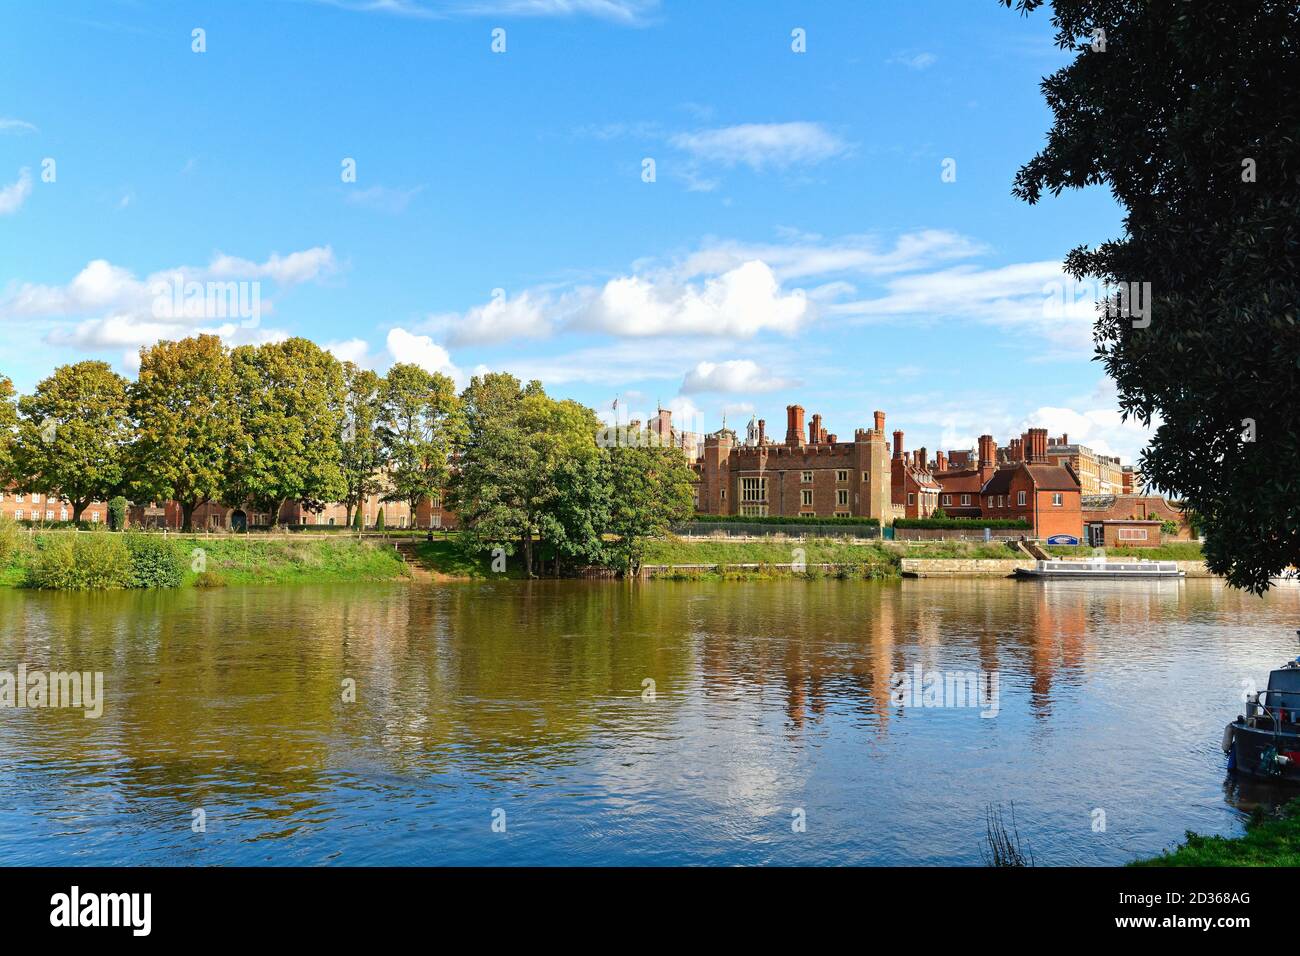 Extérieur du Palais Royal de Hampton court avec la Tamise au premier plan, un jour d'automne ensoleillé, à l'ouest de Londres Angleterre Royaume-Uni Banque D'Images